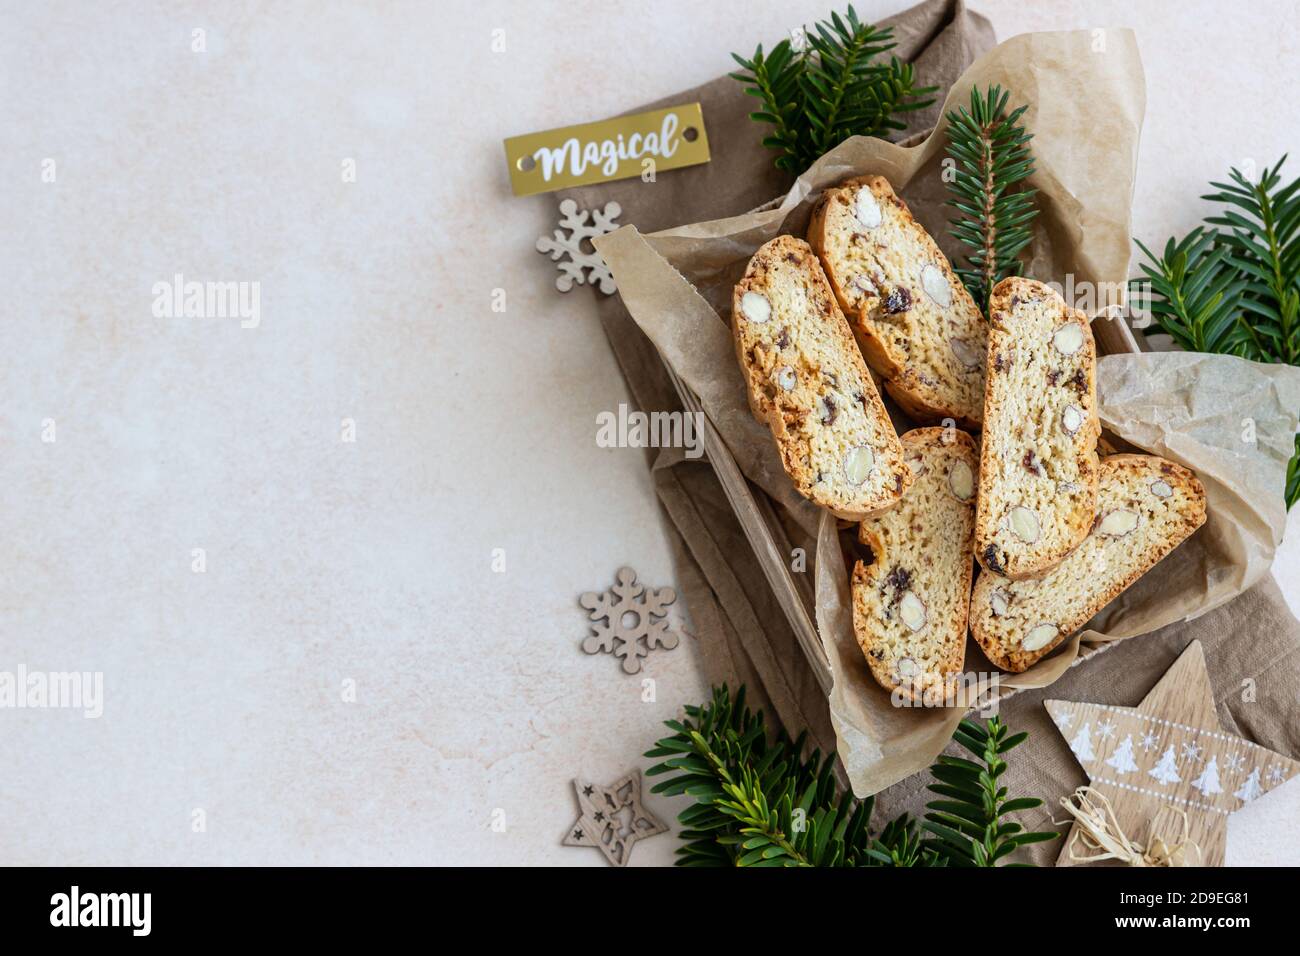 Deliziosi biscotti italiani fatti in casa in scatola regalo a base di carta artigianale. Idea per un regalo dolce perfetto per Natale o Capodanno. Vista dall'alto. Foto Stock